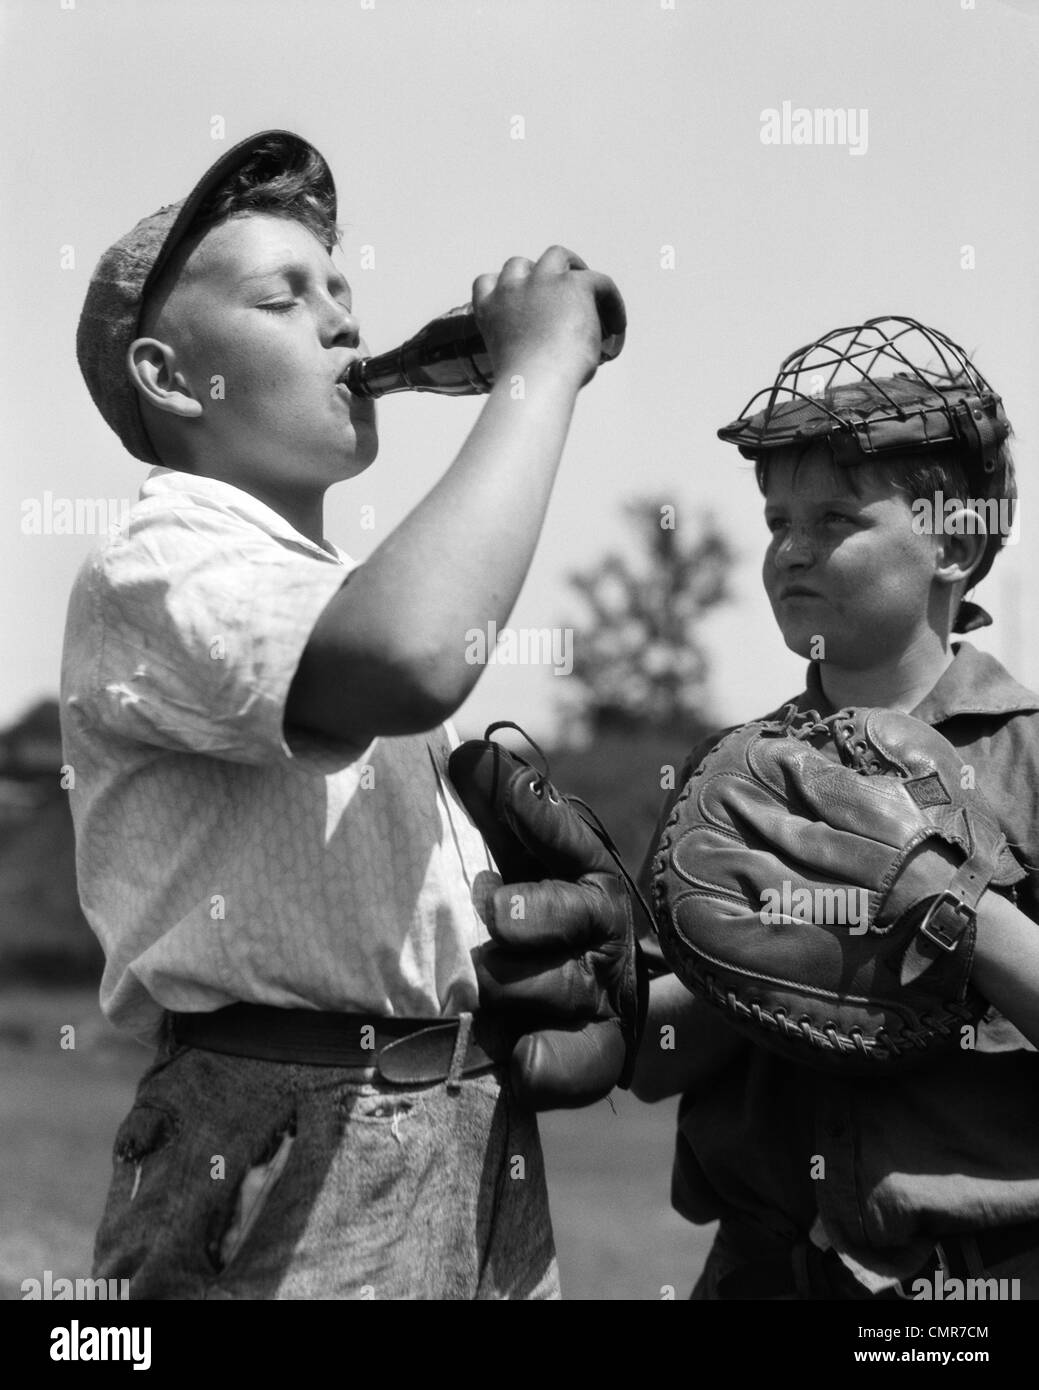 1930s coppia di ragazzi che indossa guanti da baseball UNO CON CATCHER'S MASK guardare altri indossando il cappuccio bere una bottiglia di soda Foto Stock